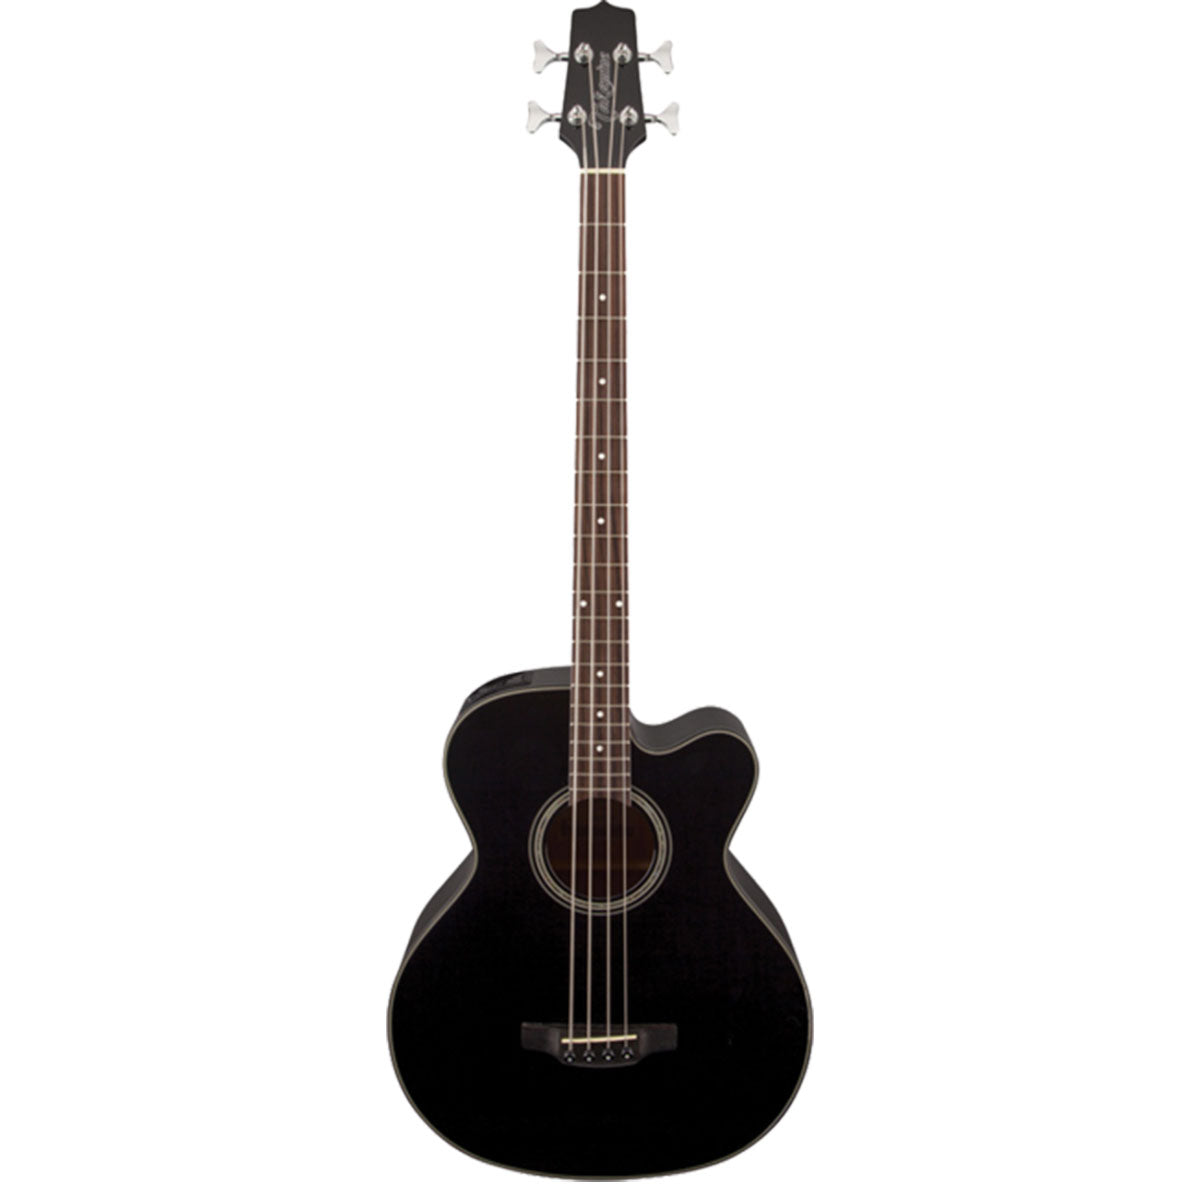 Takamine GB30 Series Acoustic Bass Guitar Black w/ Pickup & Cutaway - TGB30CEBLK